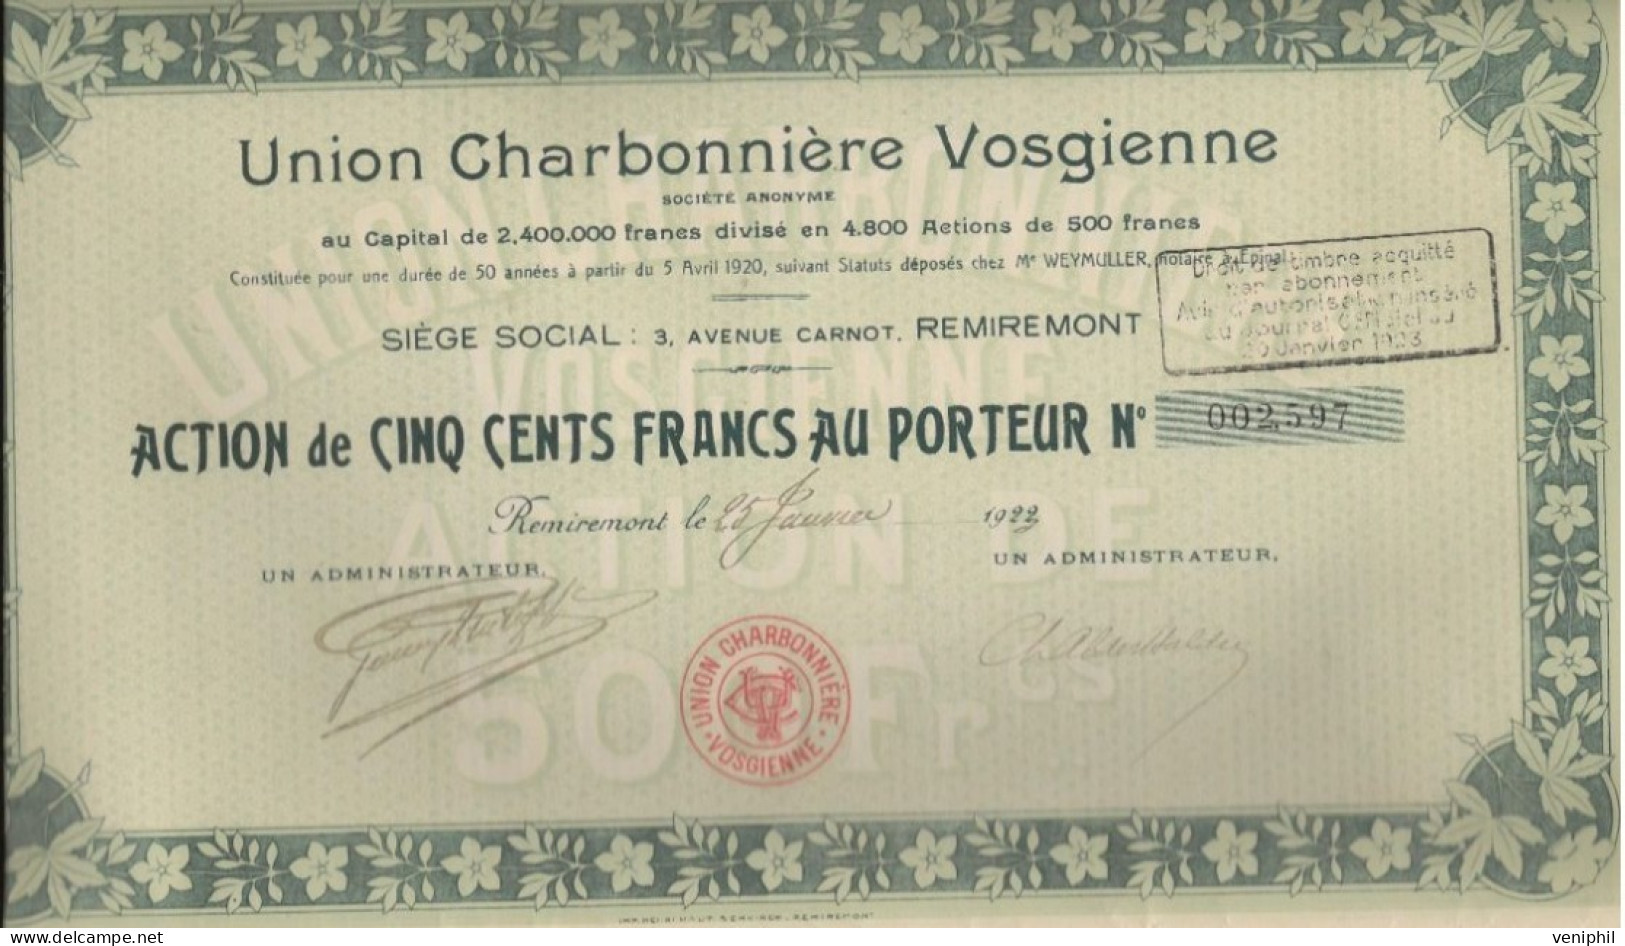 UNION CHARBONNIERE VOSGIENNE - LOT DE 4 ACTIONS DE CINQ CENT FRANCS -DIVISE EN 4800 ACTIONS - ANNEE 1922 - Miniere